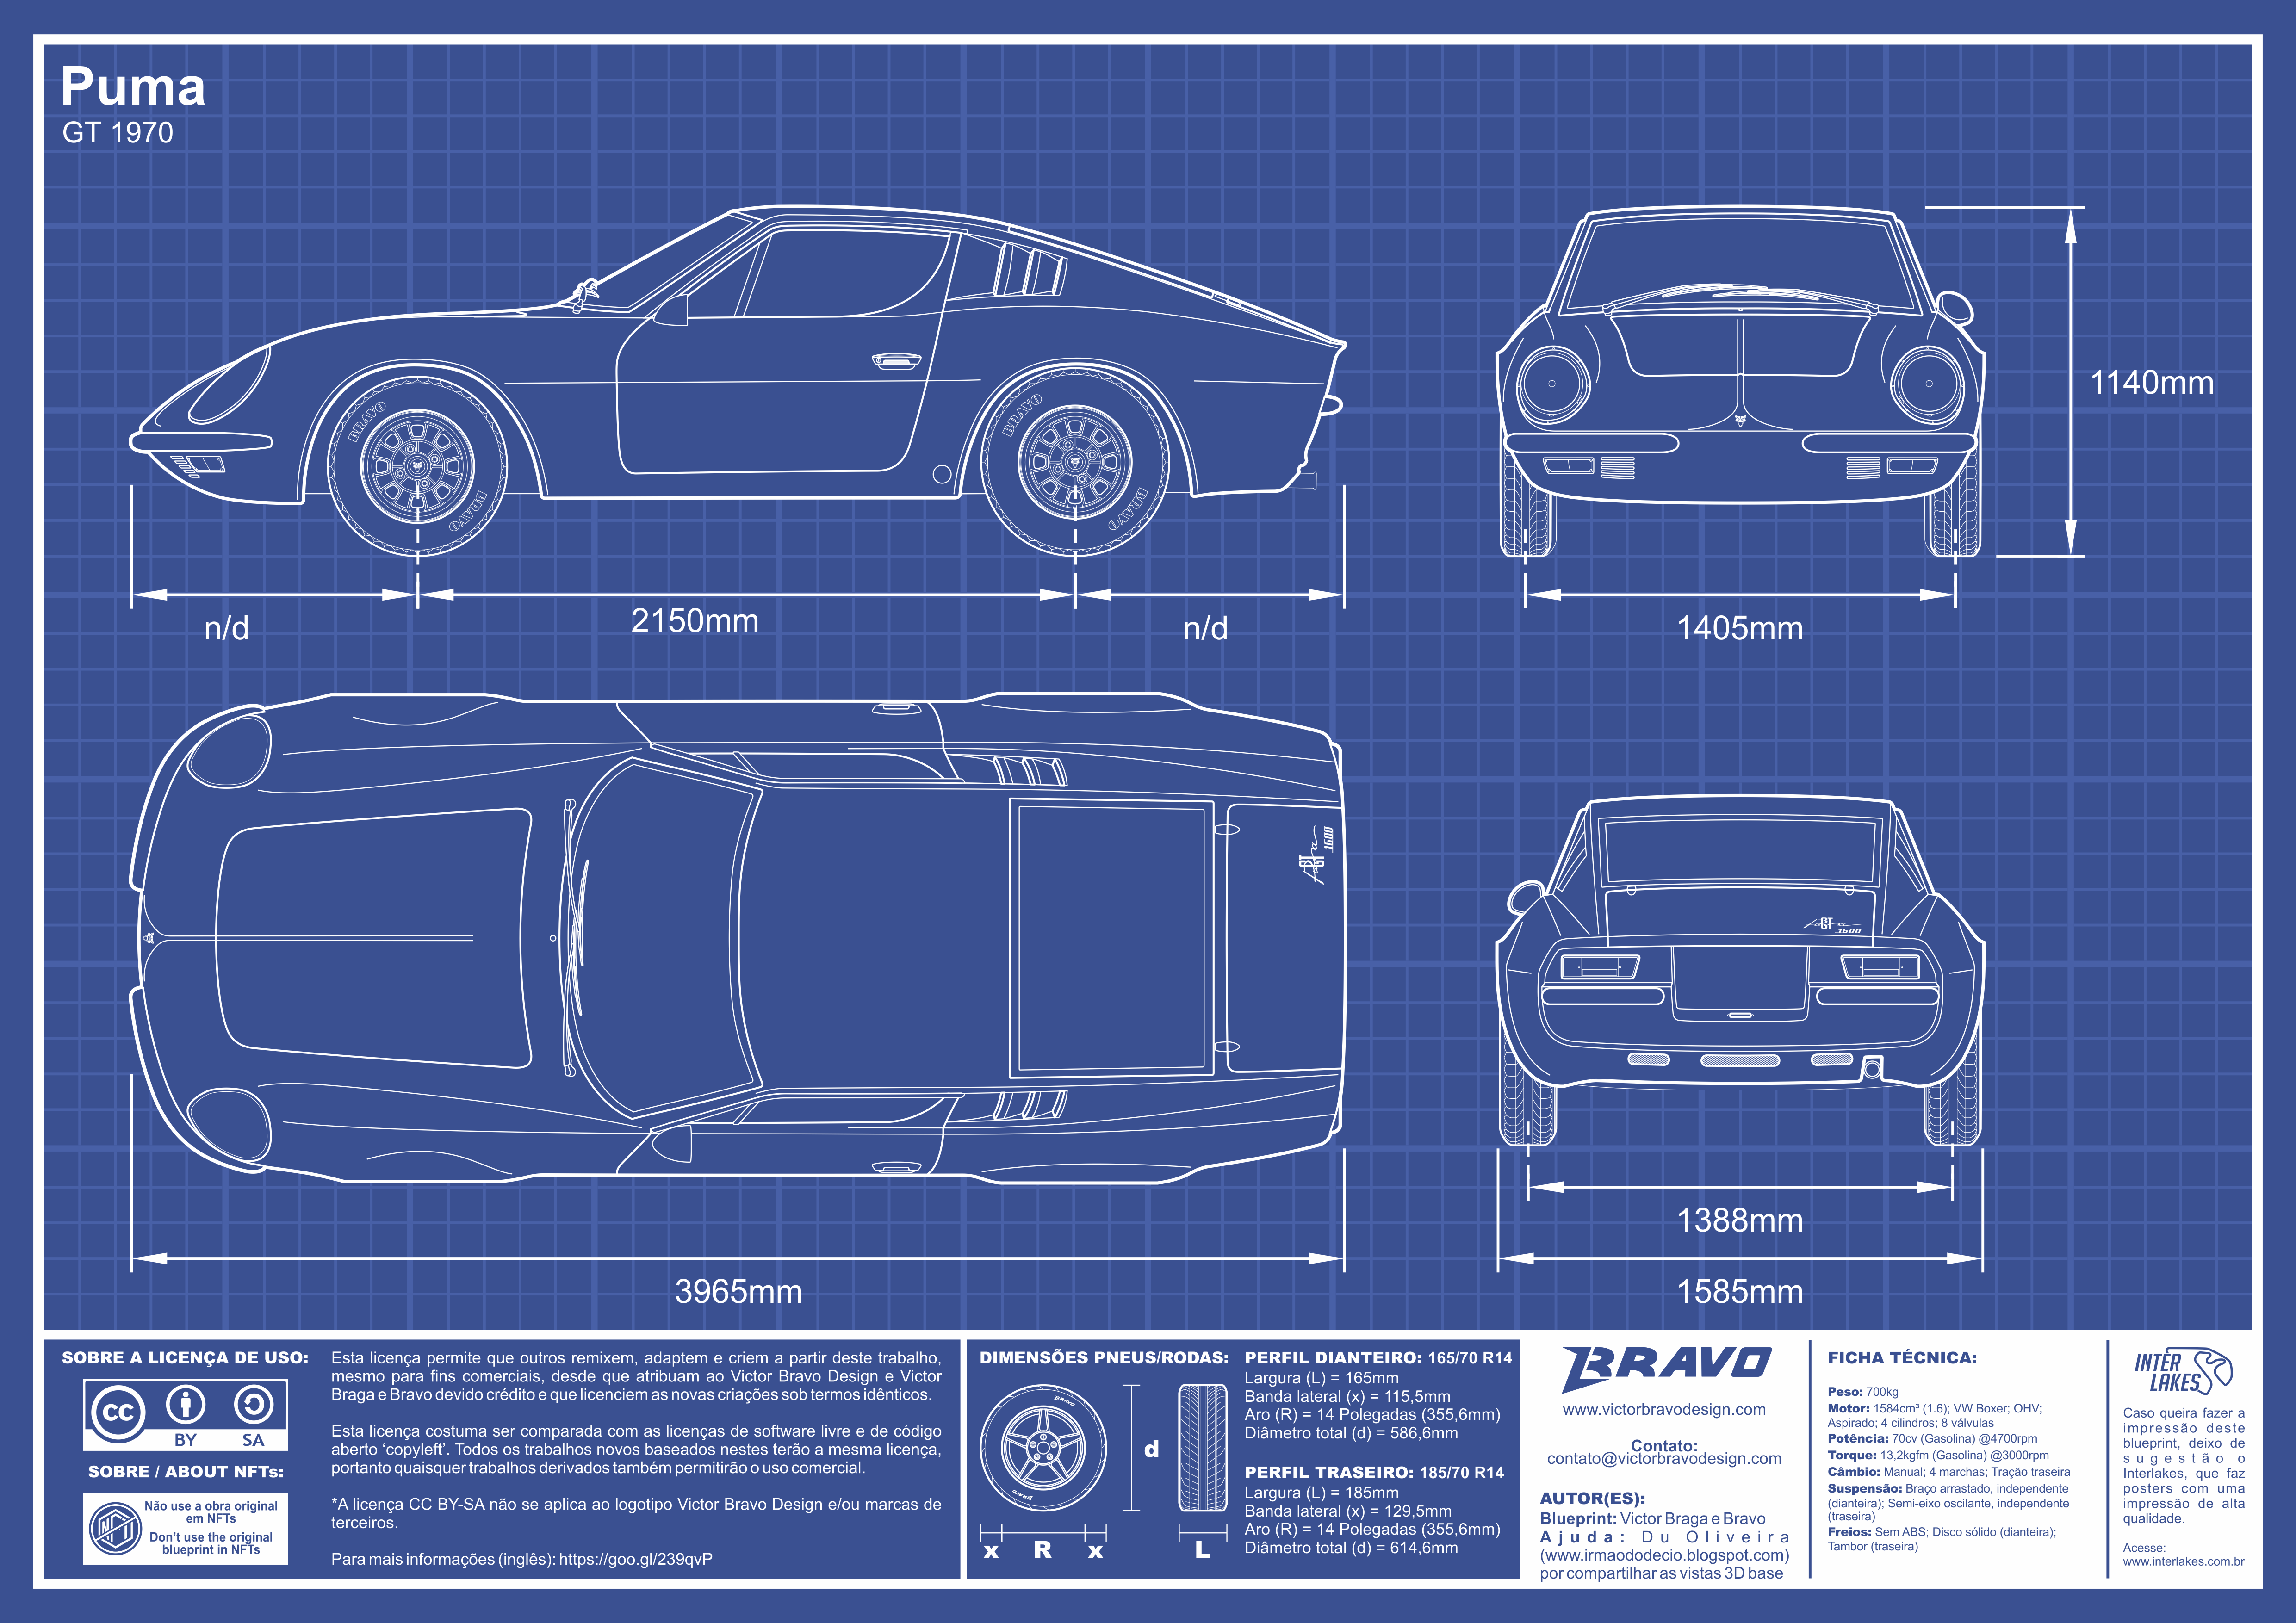 Imagem mostrando o desenho do blueprint do Puma GT 1970